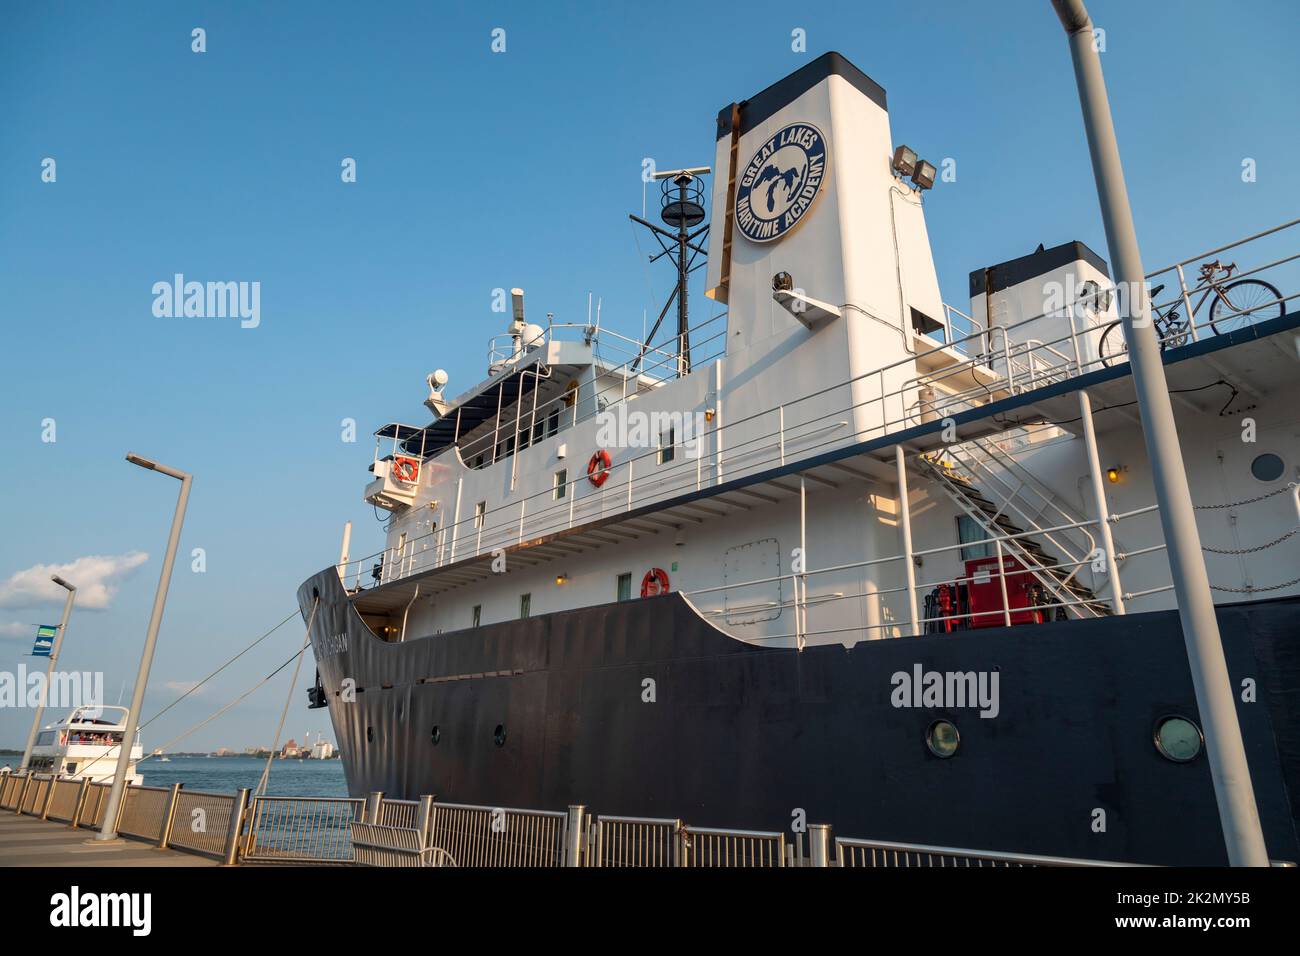 Detroit, Michigan - El 'Estado de Michigan', atracado en el río Detroit. El buque es un buque de entrenamiento operado por la Academia Marítima de los Grandes Lagos A. Foto de stock